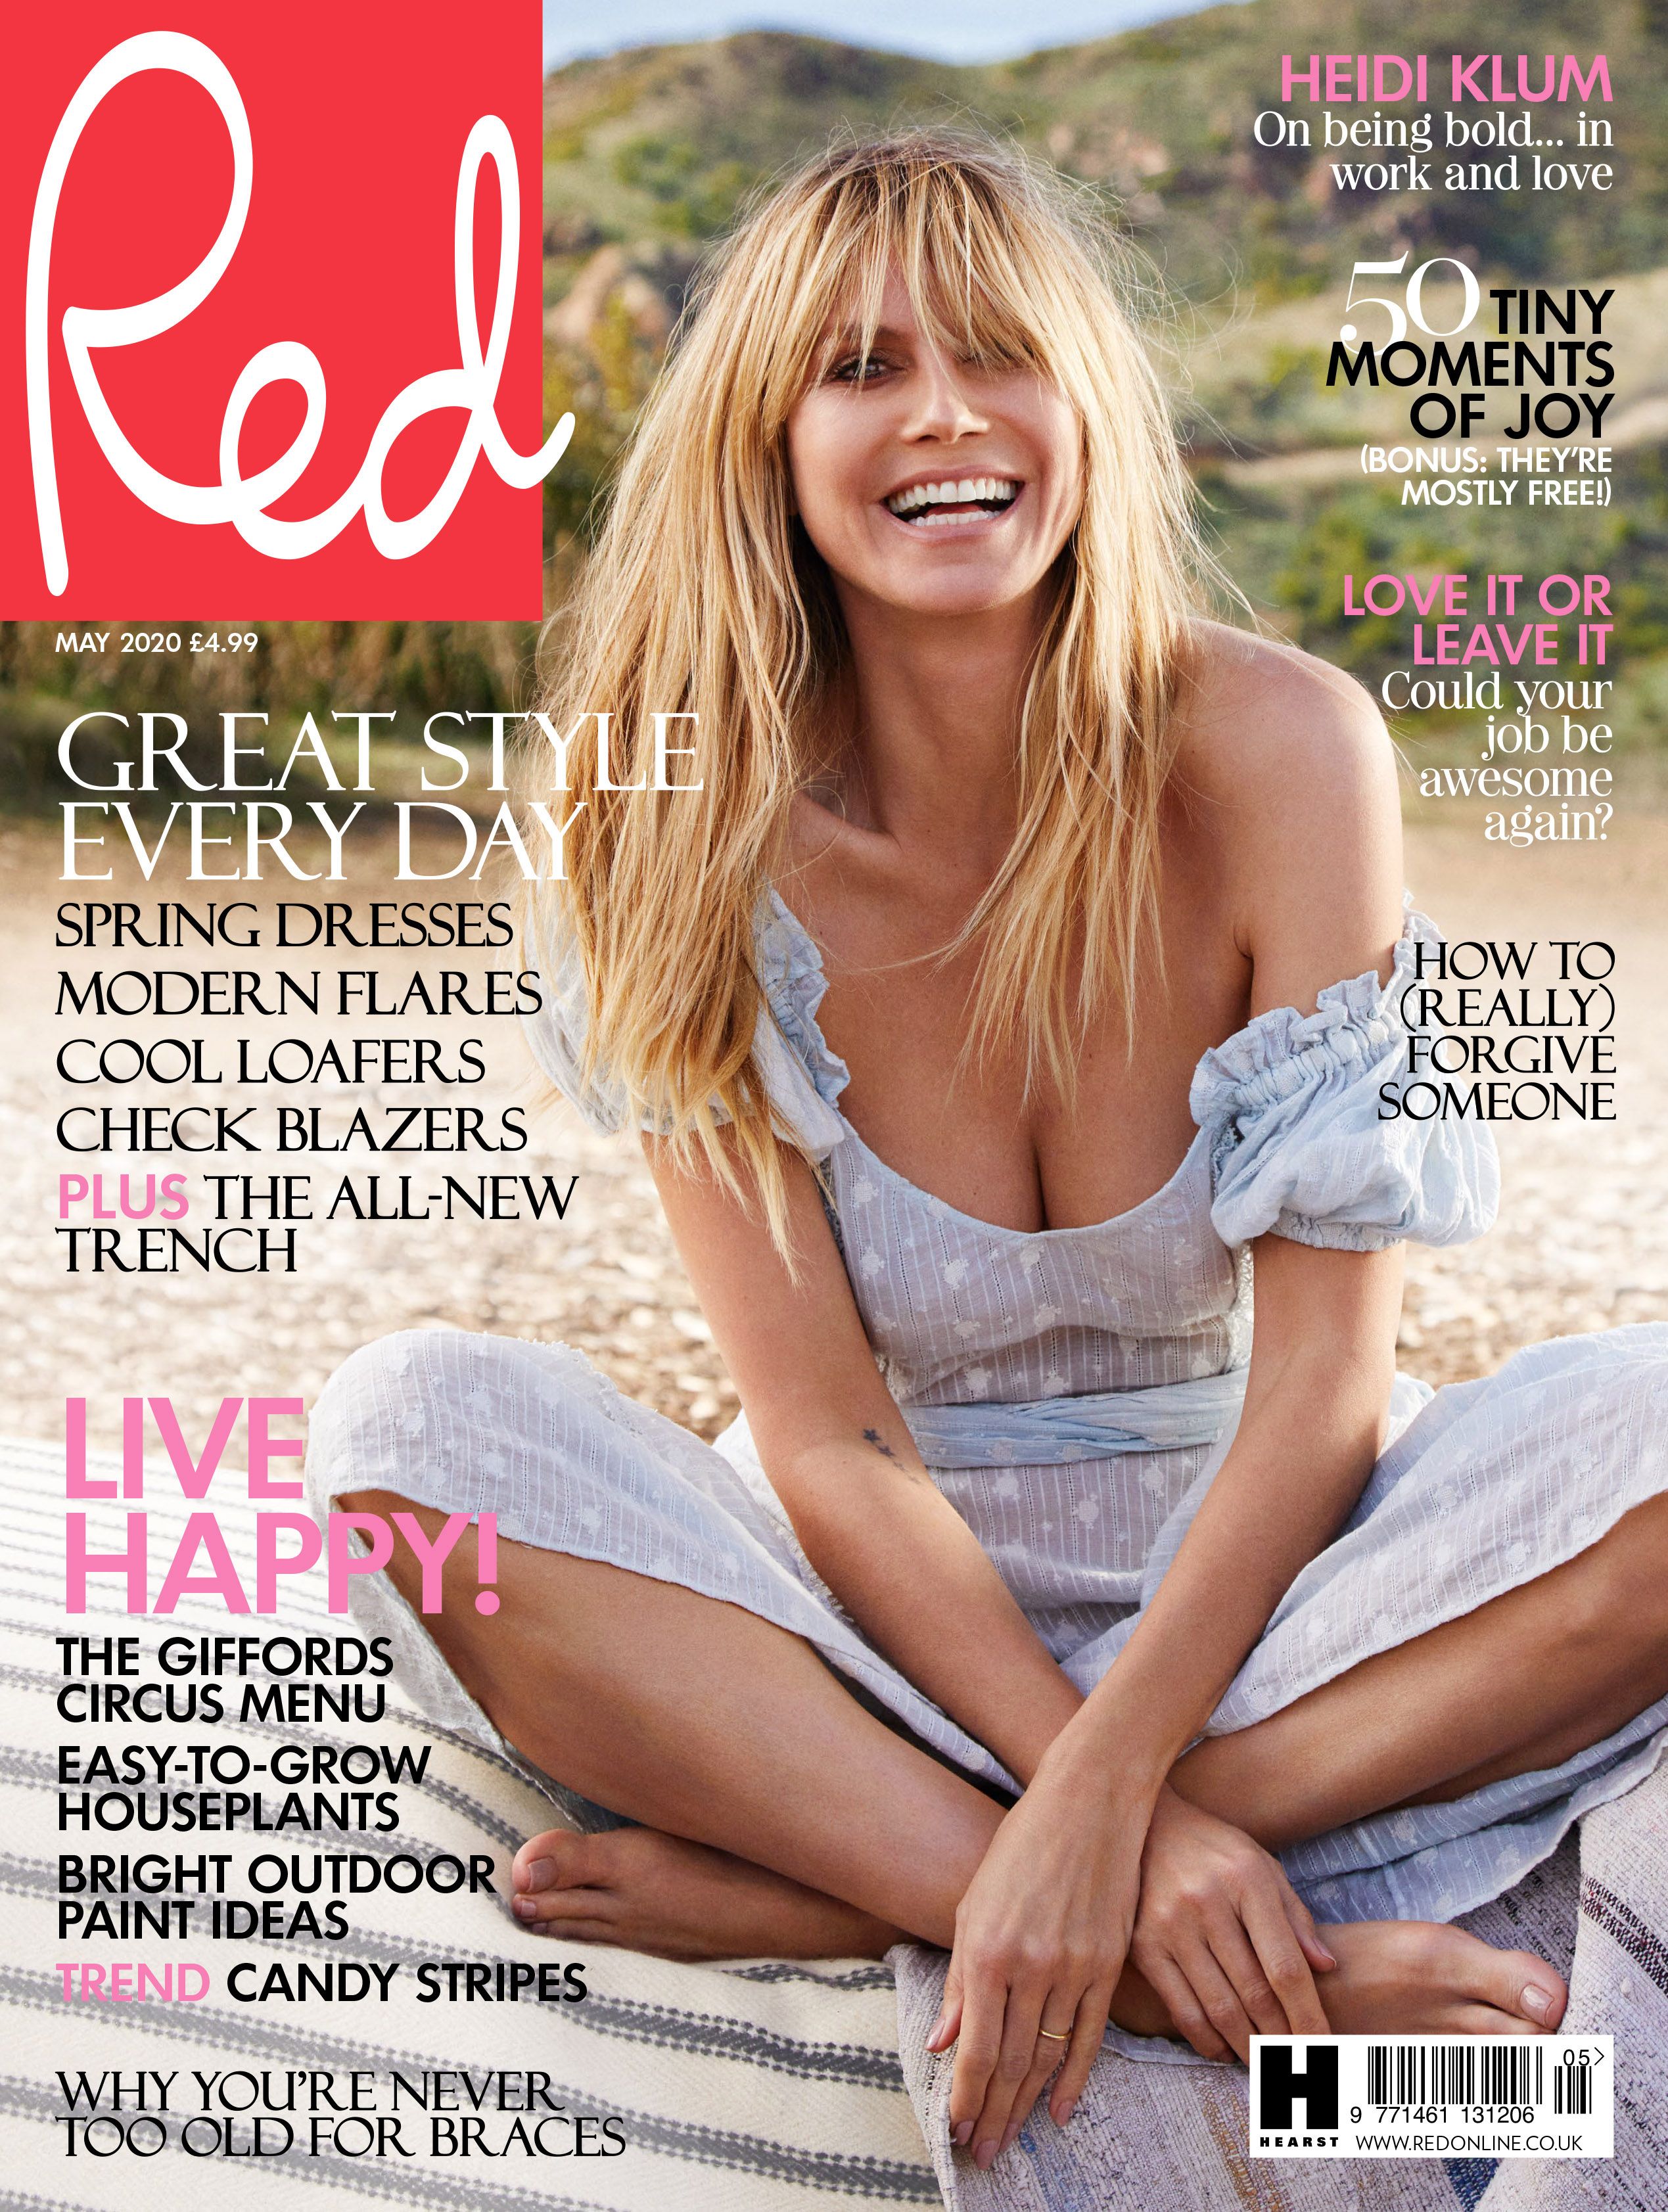 FOTOS Heidi Klum en la revista Red!